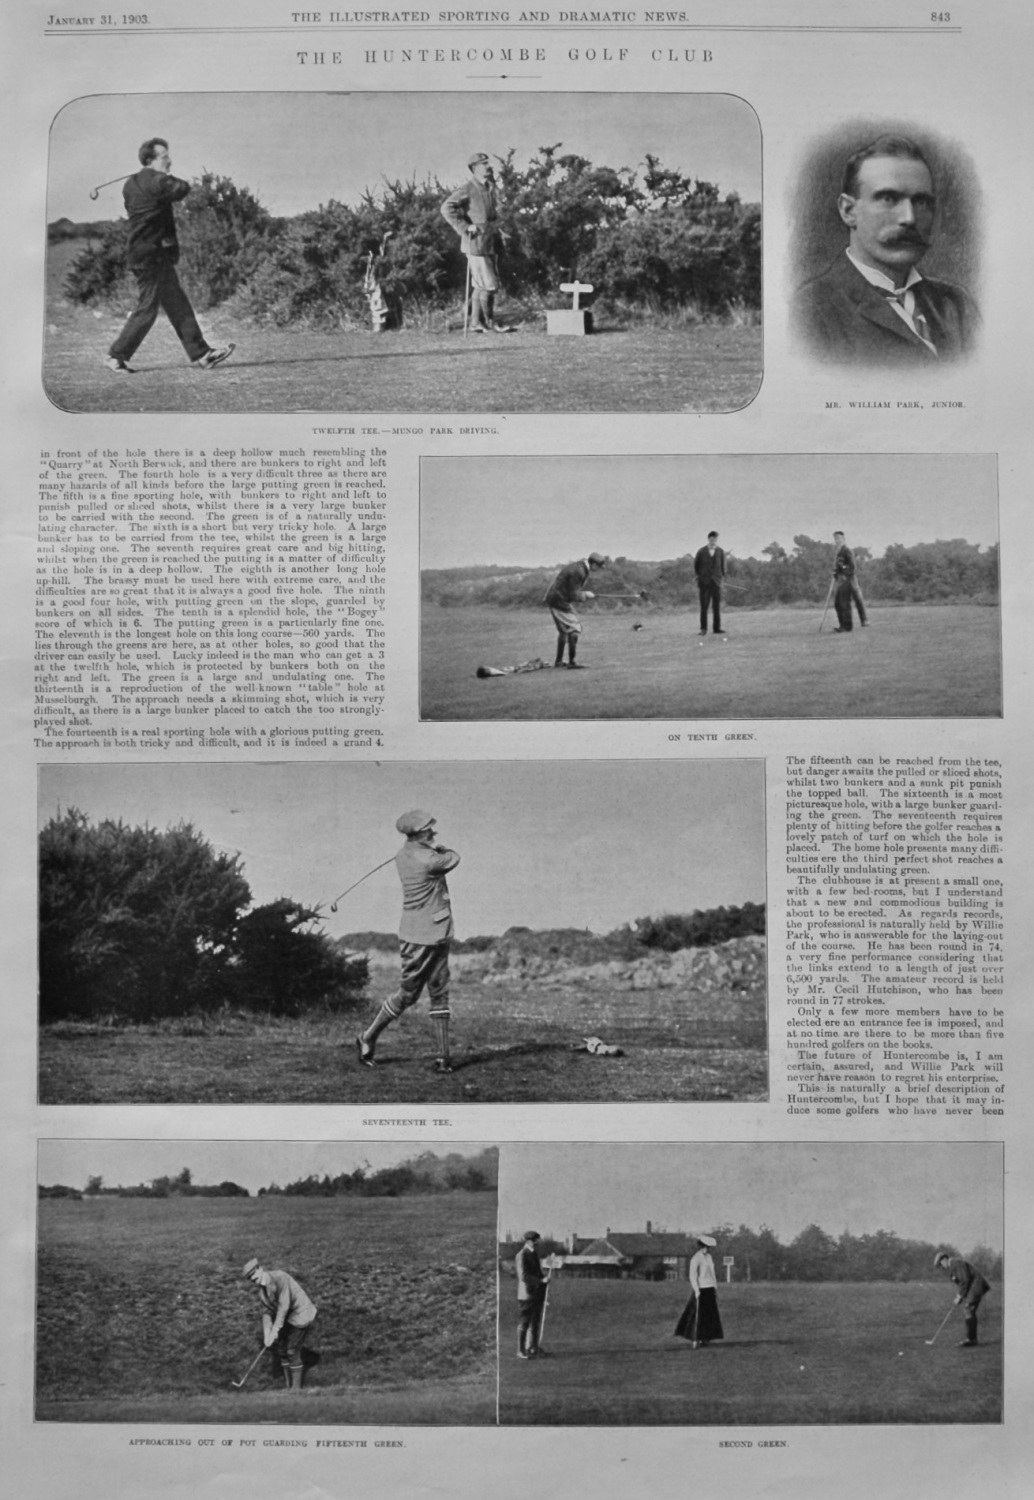 The Huntercombe Golf Club in Oxfordshire. 1903.